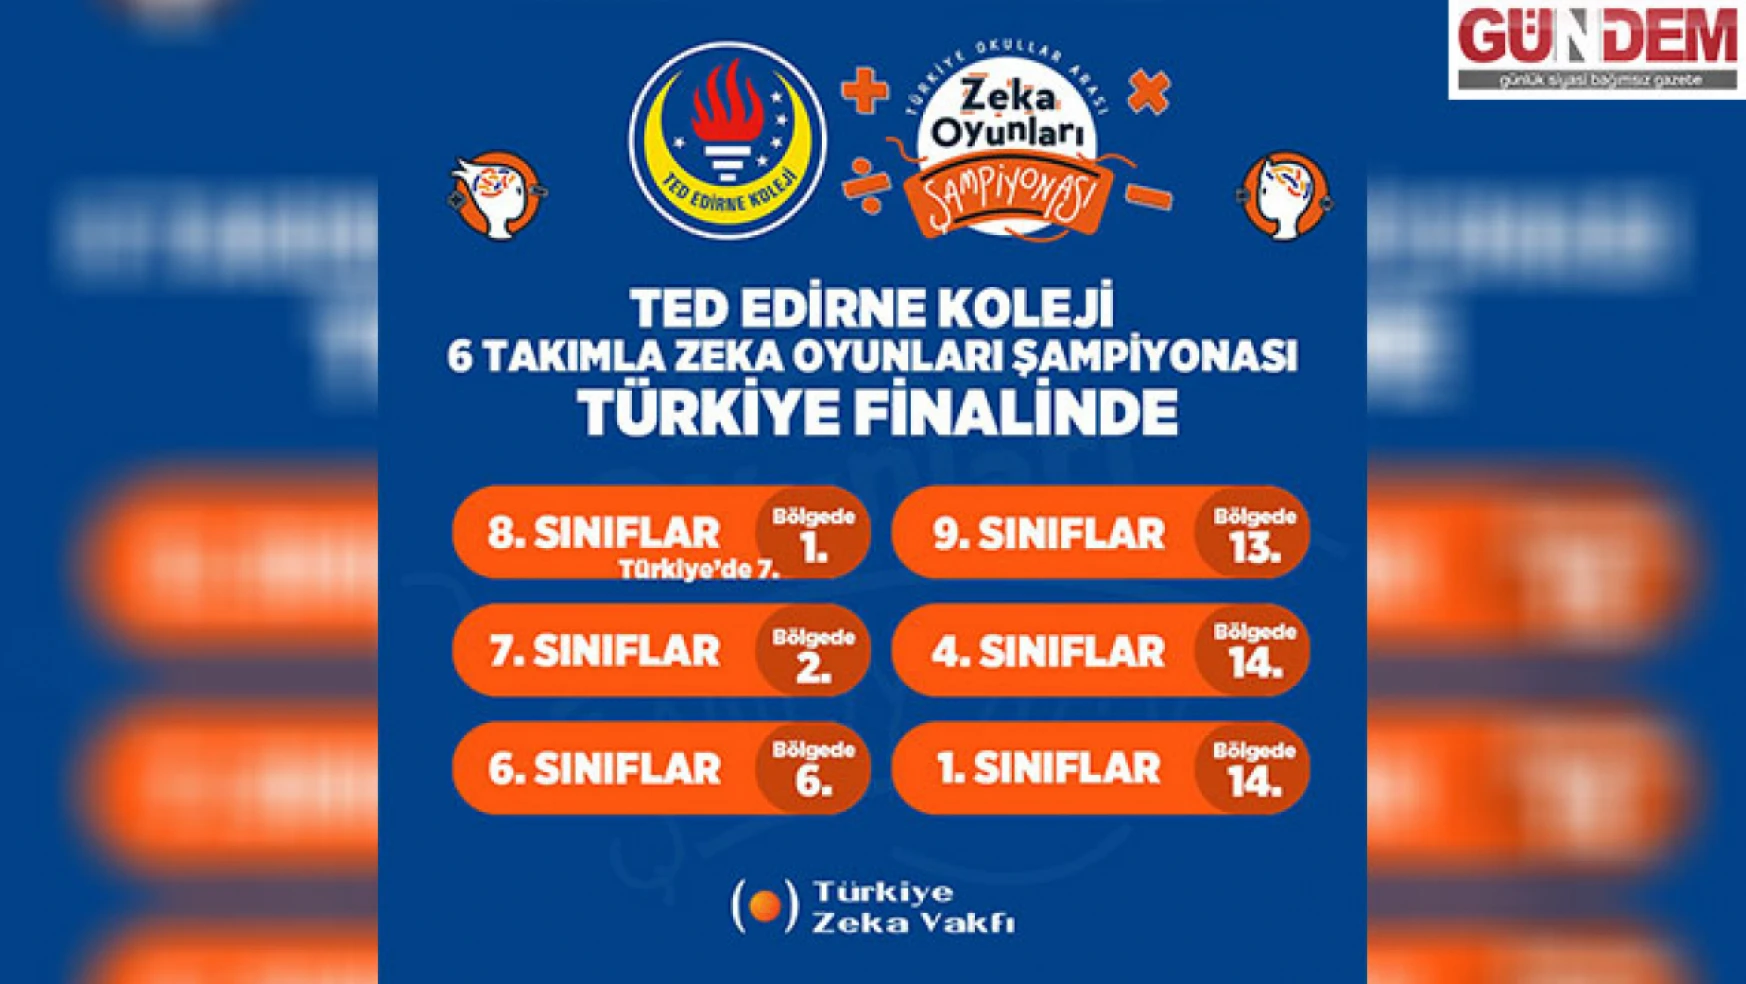 TED Edirne Koleji Zeka Oyunları Şampiyonası takımı finale yükseldi